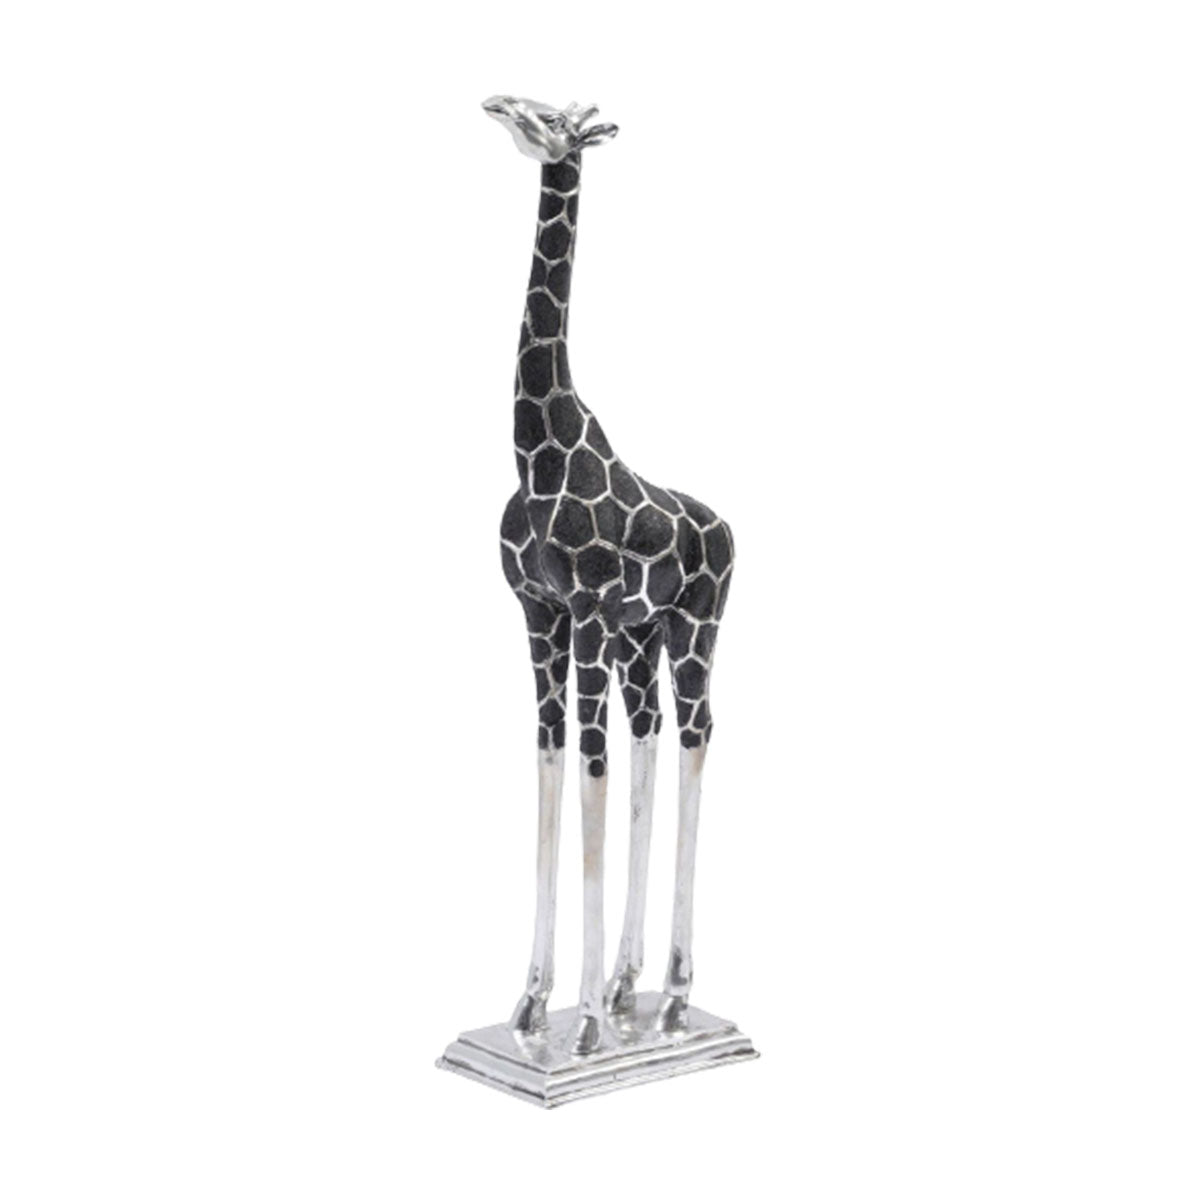 Riesige Giraffenskulptur mit dem Kopf nach vorne